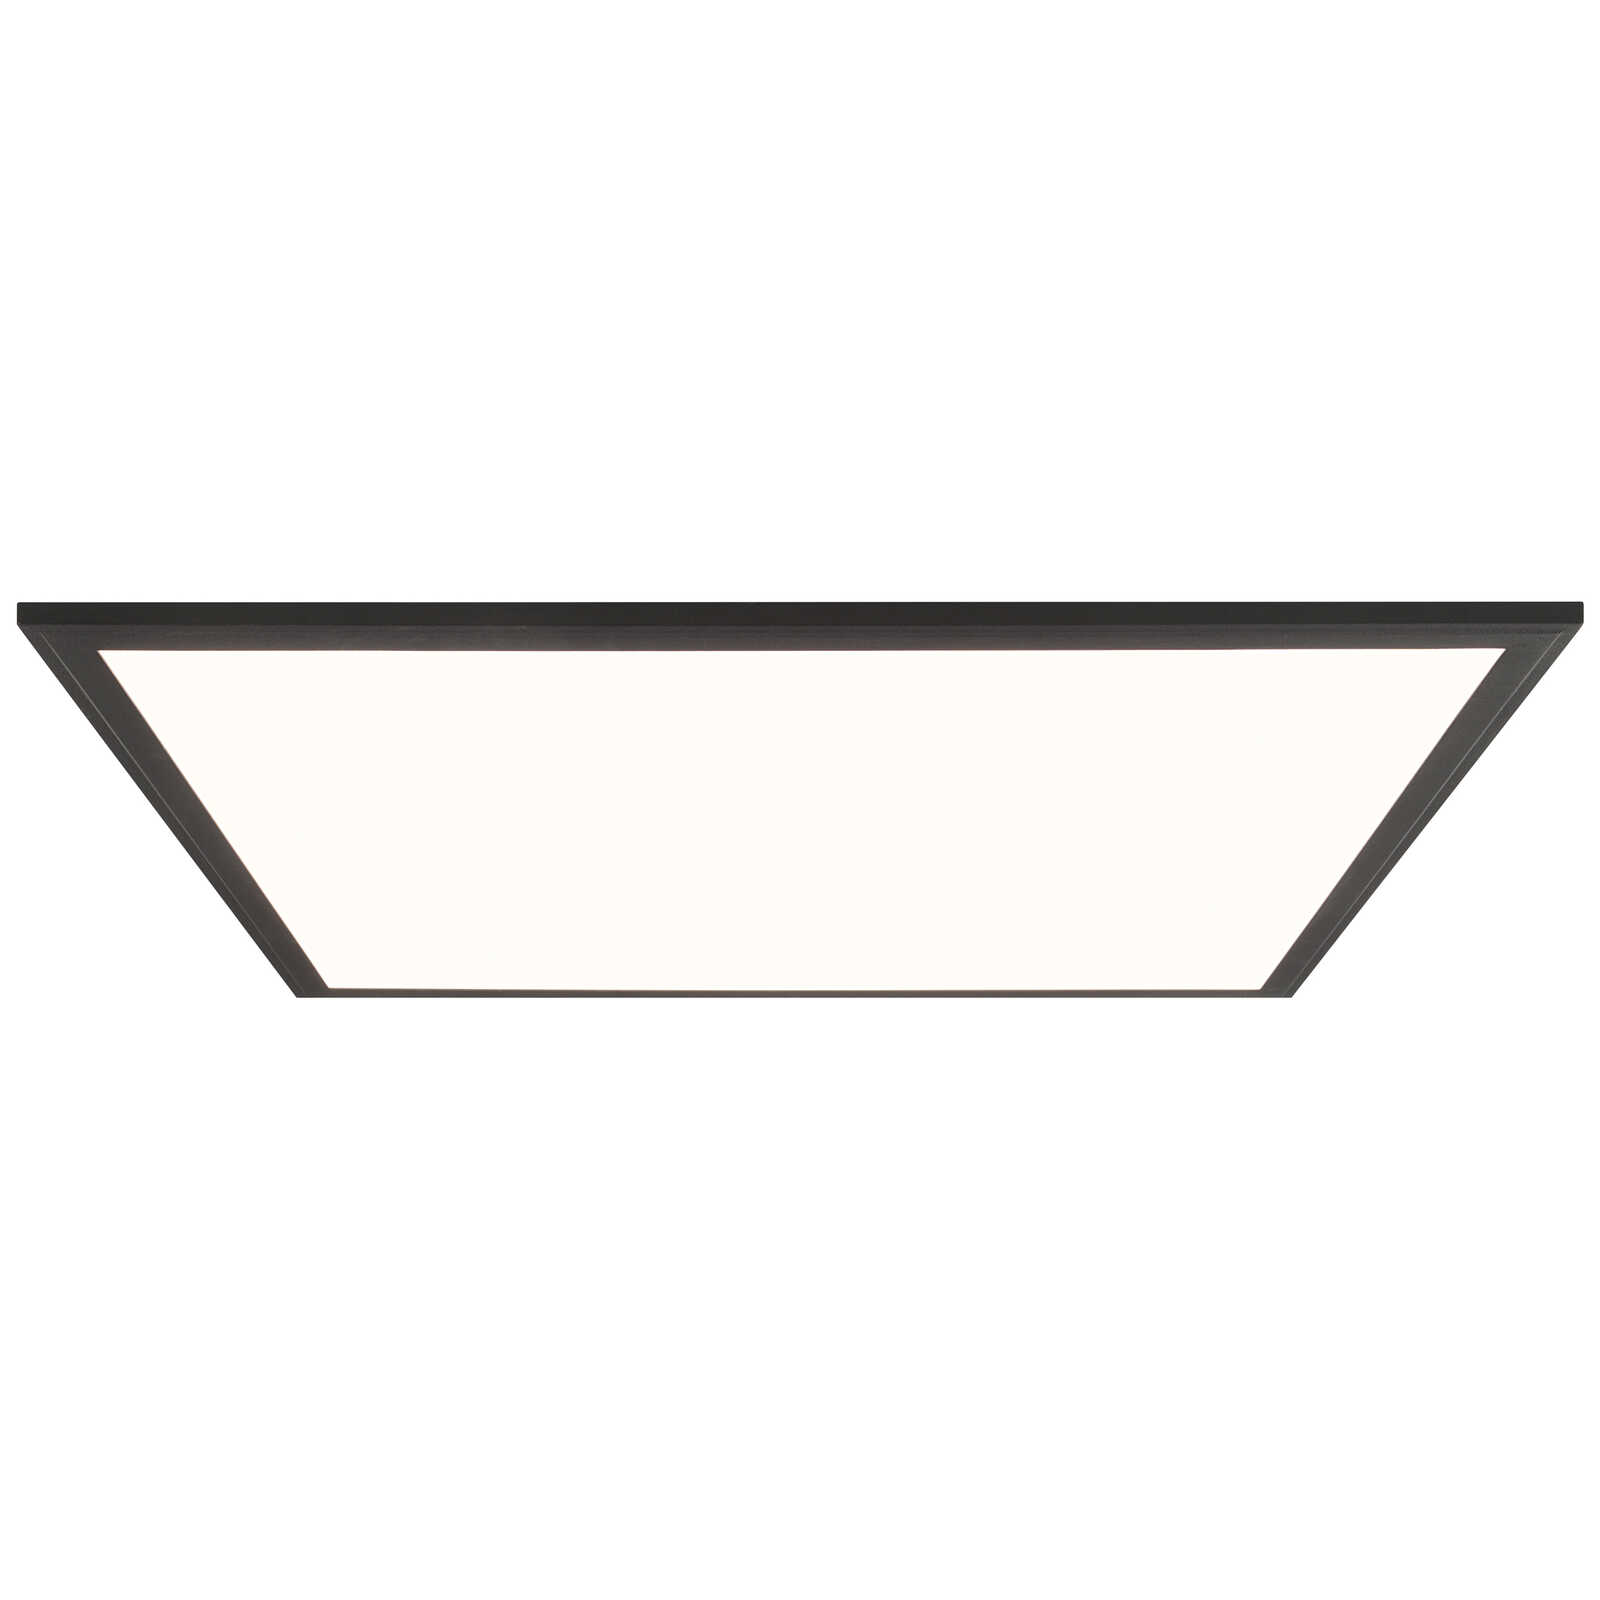             Plastic ceiling light - Aaron 5 - Black
        